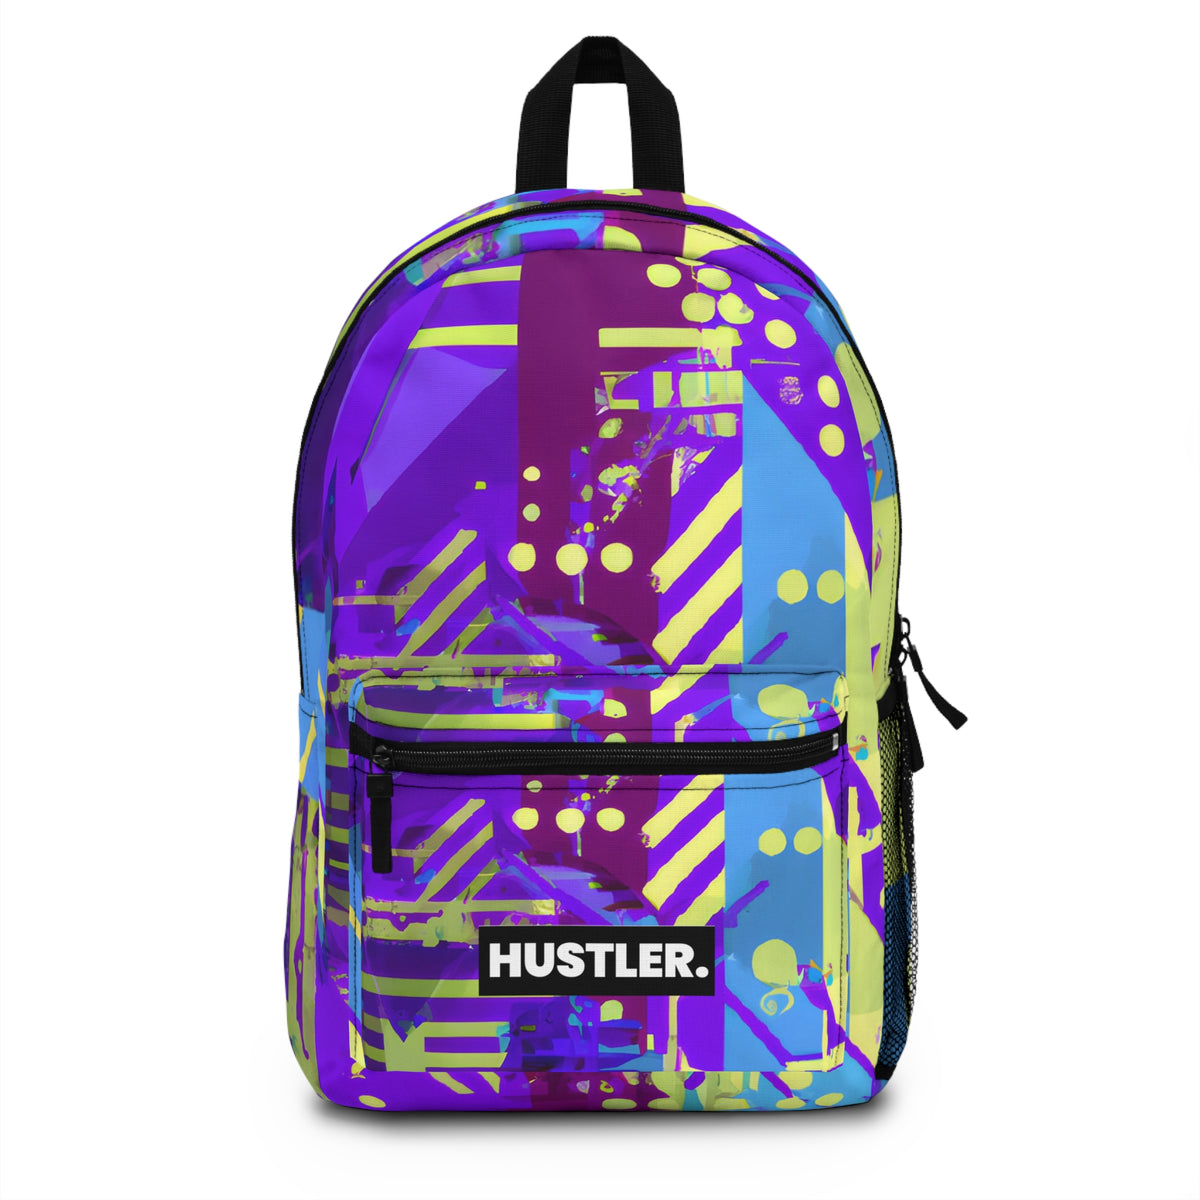 23raxiay - Hustler Backpack